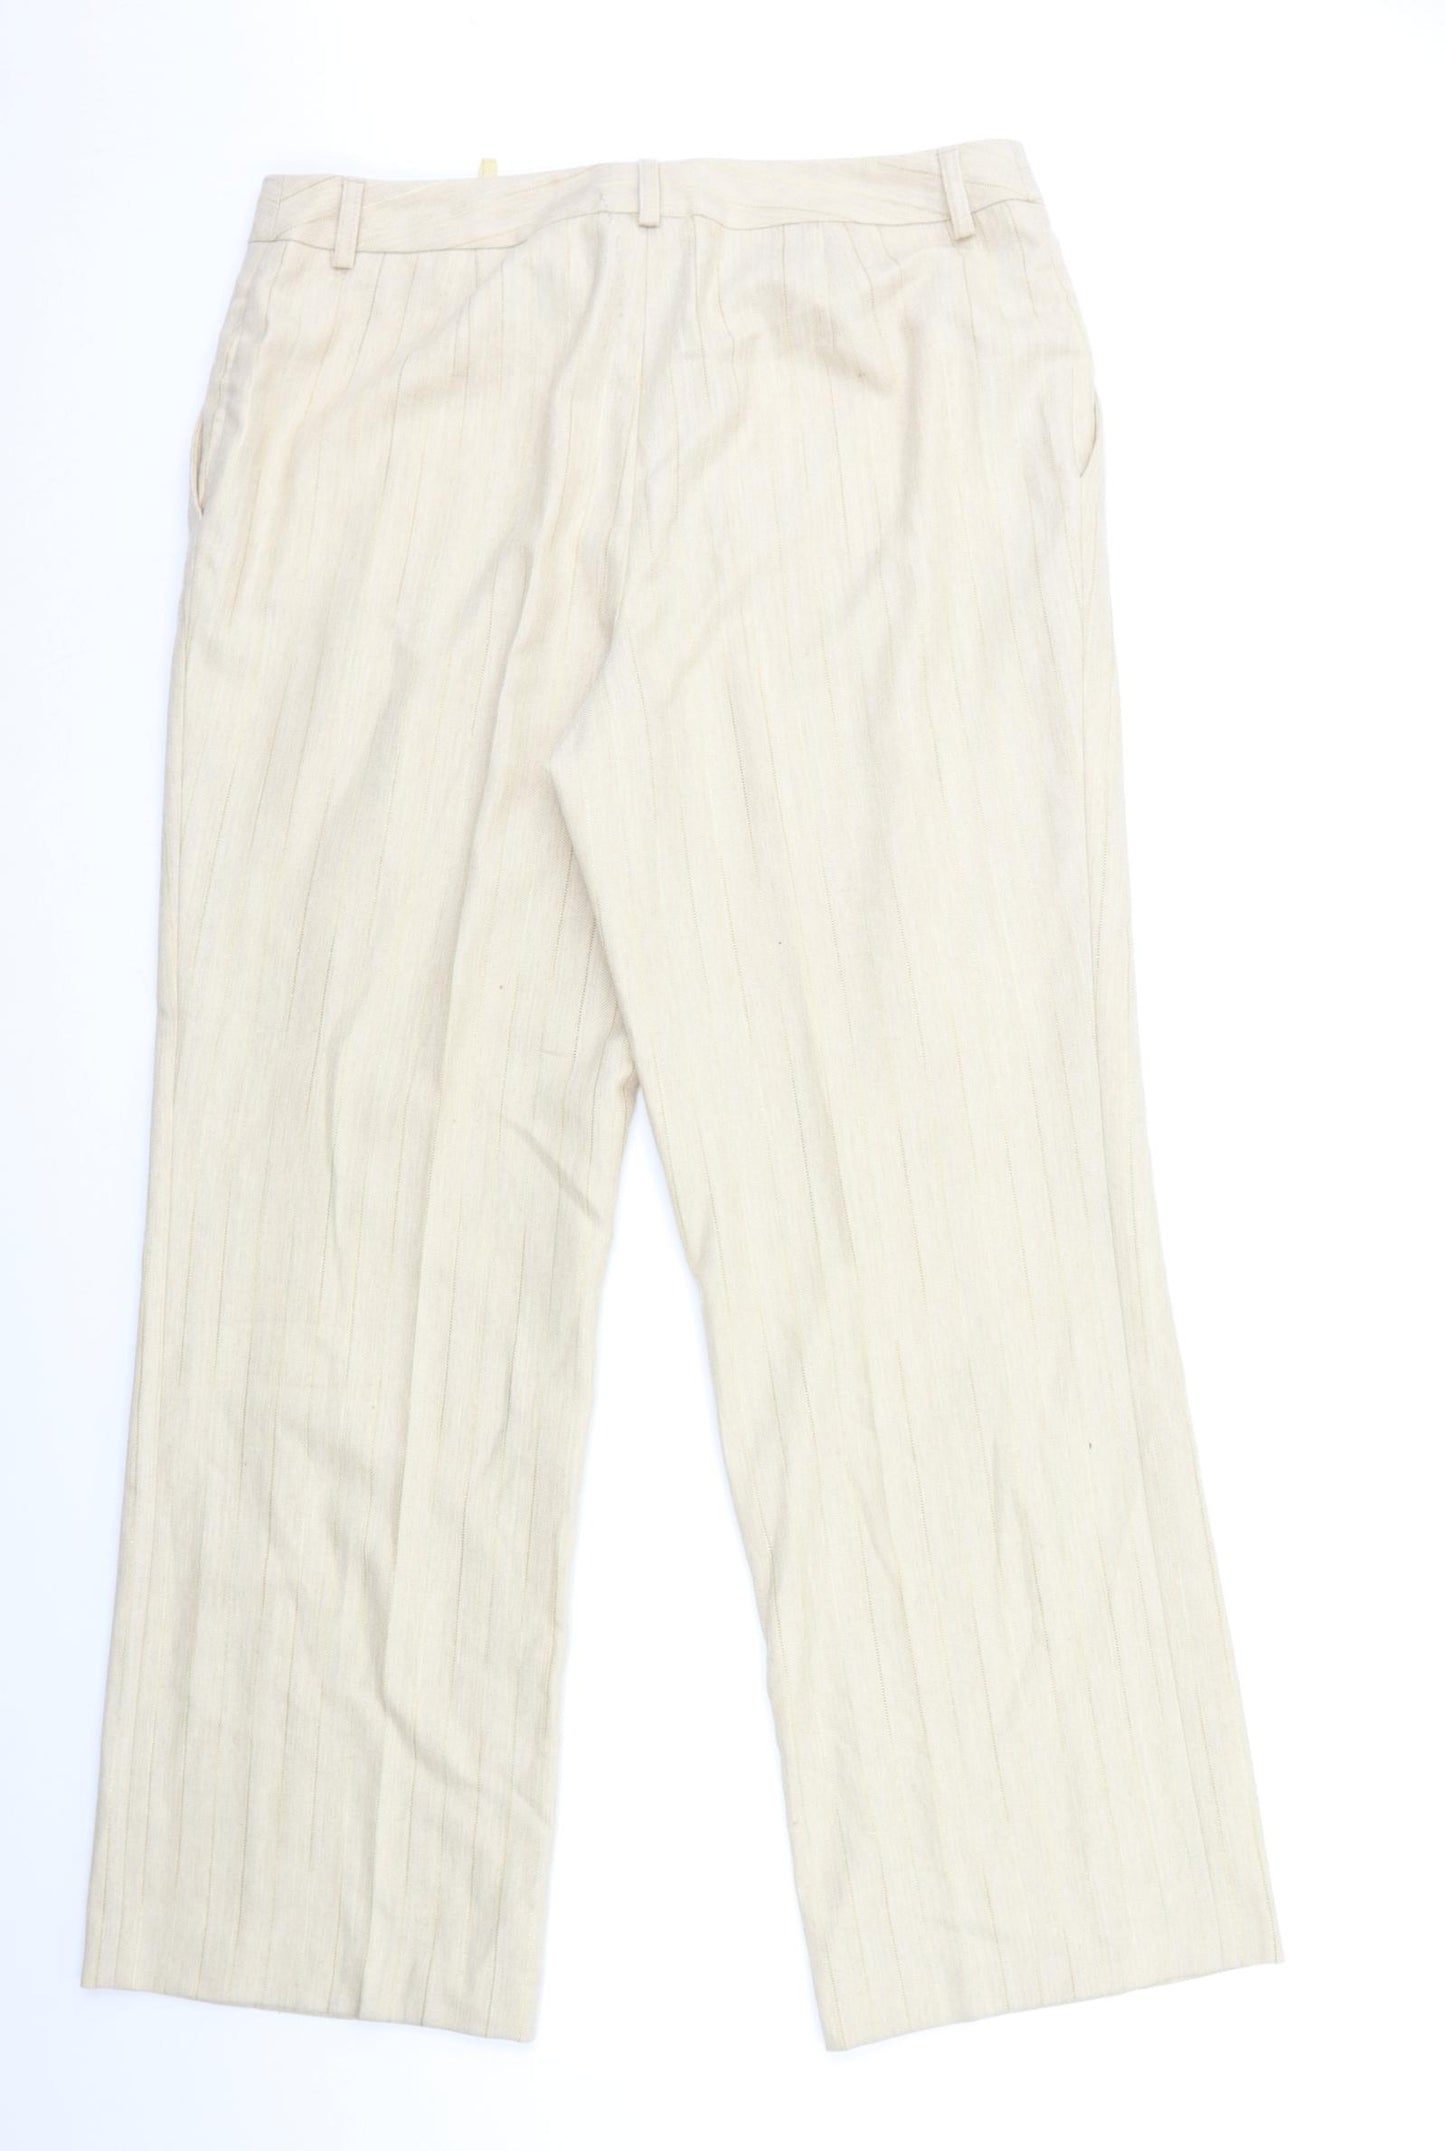 Prestige Womens Beige Striped  Trousers  Size 18 L31 in